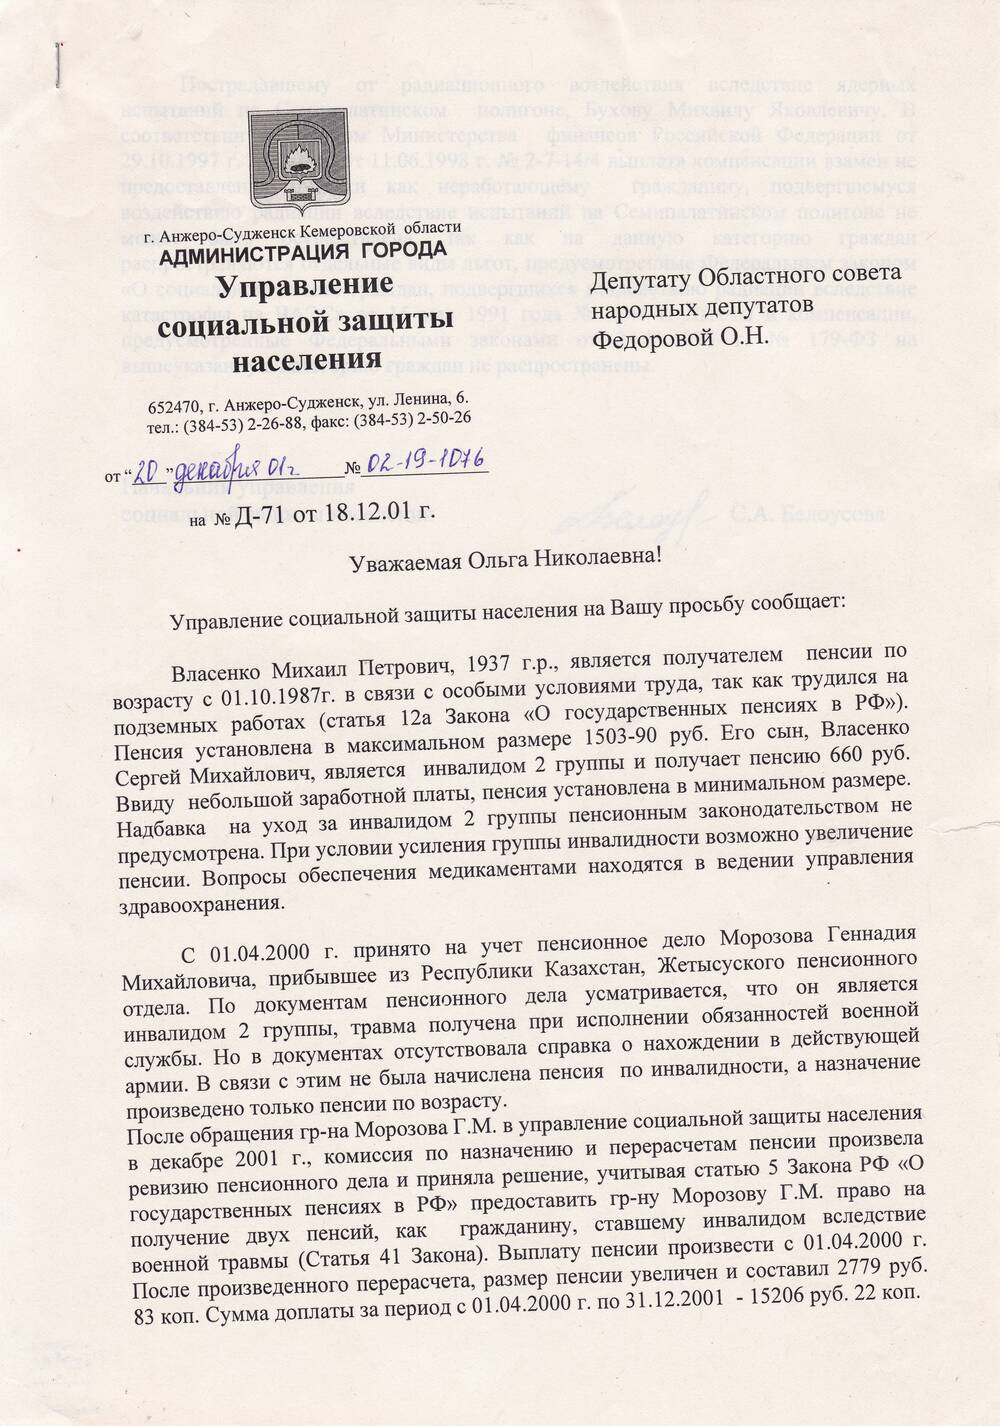 Ответ начальника управления соцзащиты Белоусовой С.А. от 20.12.2001 г.